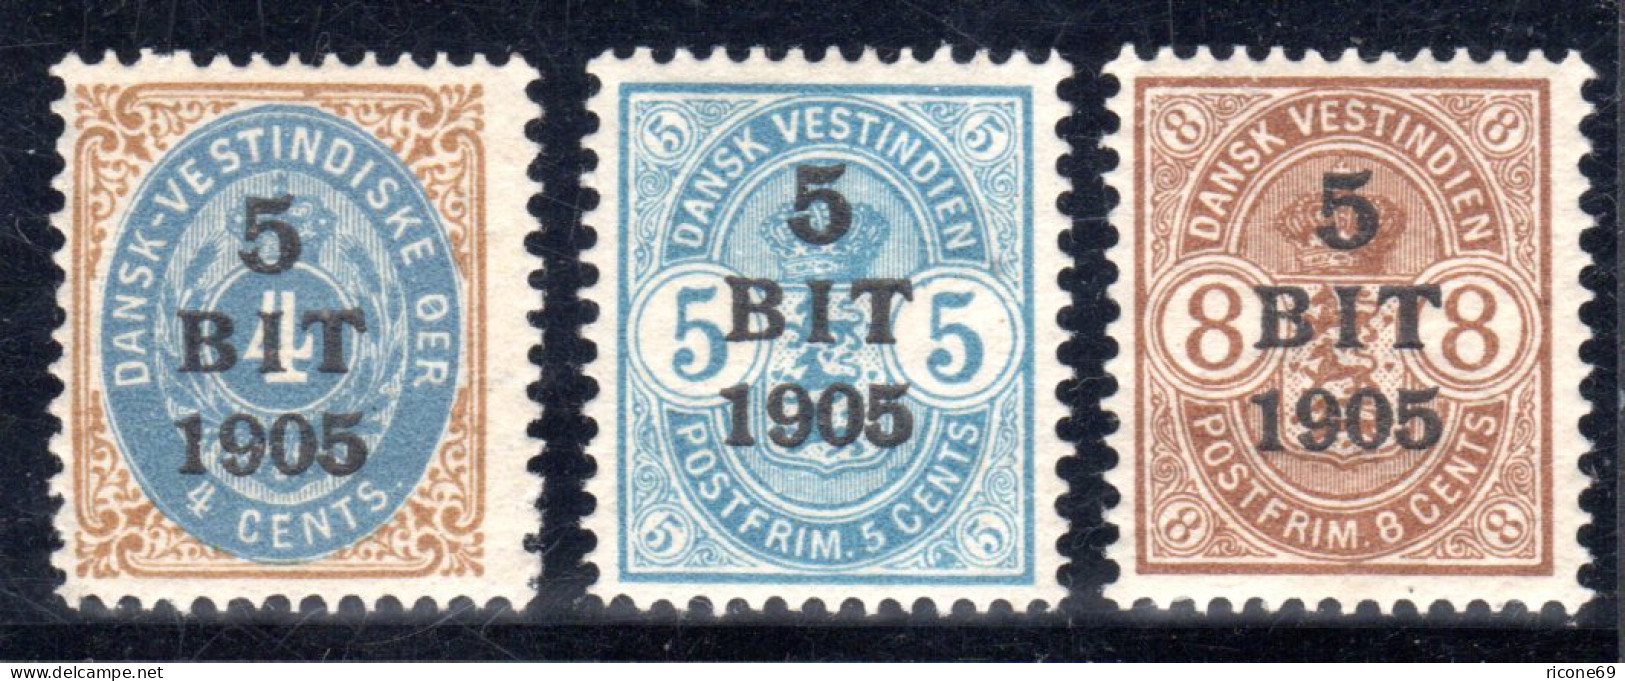 Dänisch Westindien, DWI, Kpl. Postfrische Ausgabe V. 3 Überdruckwerten 1905.  - West Indies